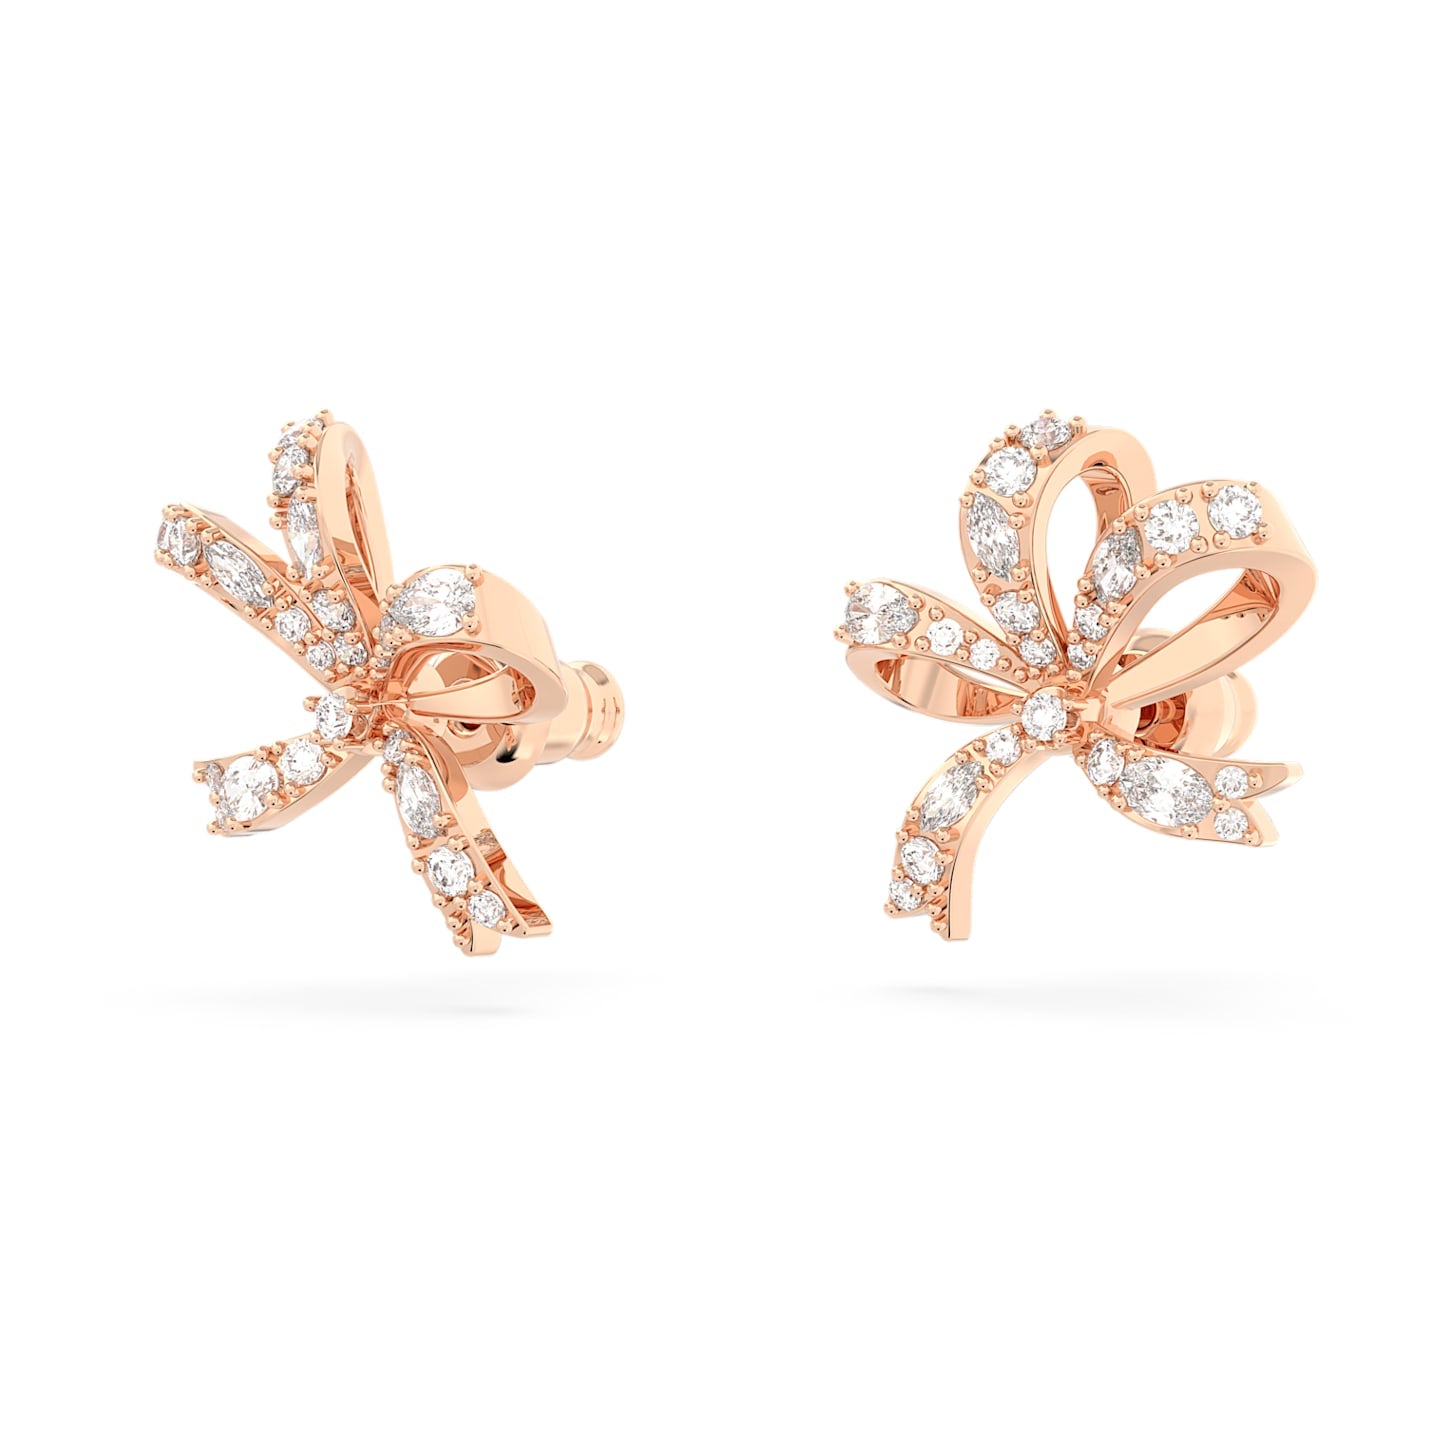 Volta - Bow - White Rose Gold - Stud earrings - Swarovski